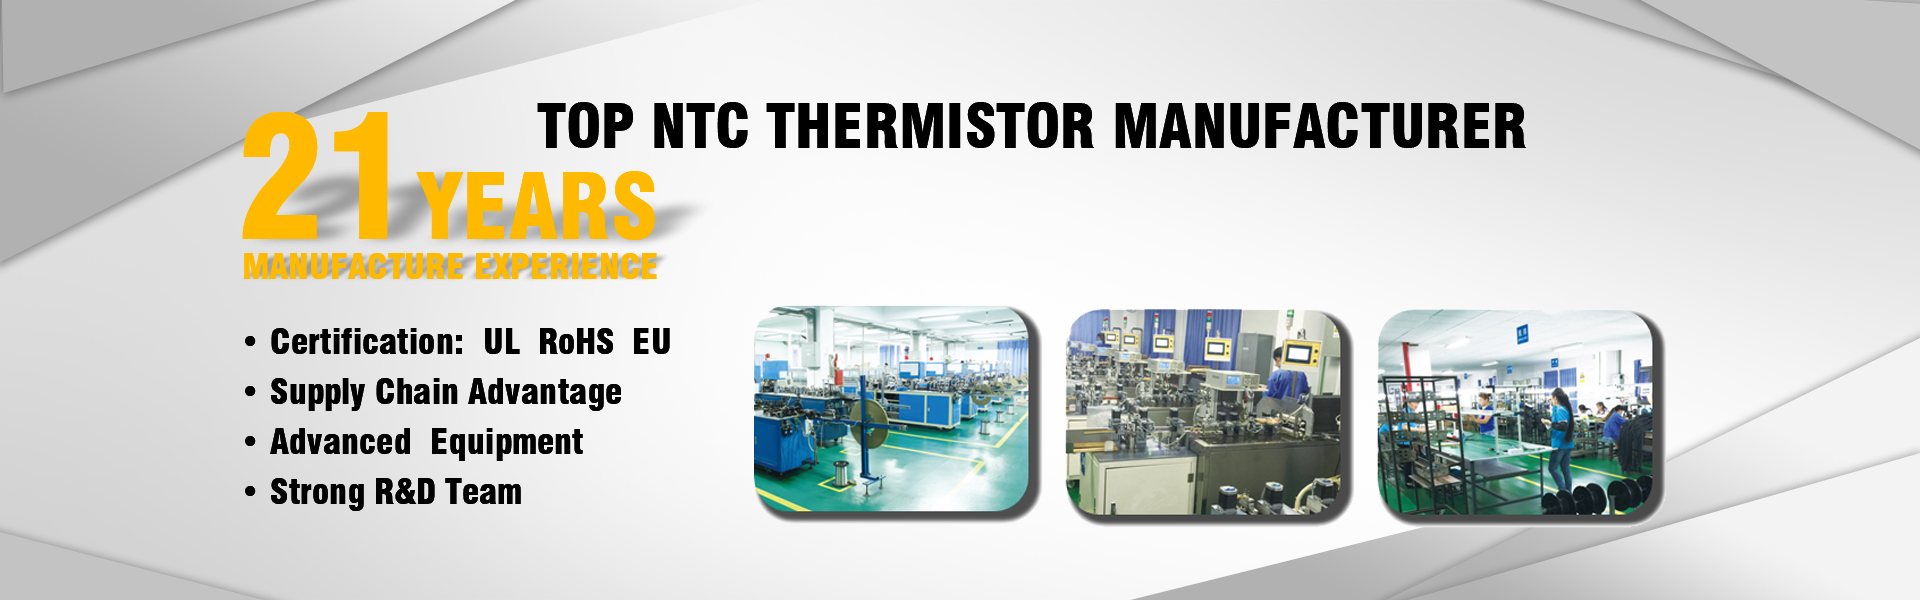 الشركة المصنعة للثرمستور NTC ، مستشعر درجة الحرارة ، دقة عالية,GUANGDONG XINSHIHENG TECHNOLOGY CO.,LTD